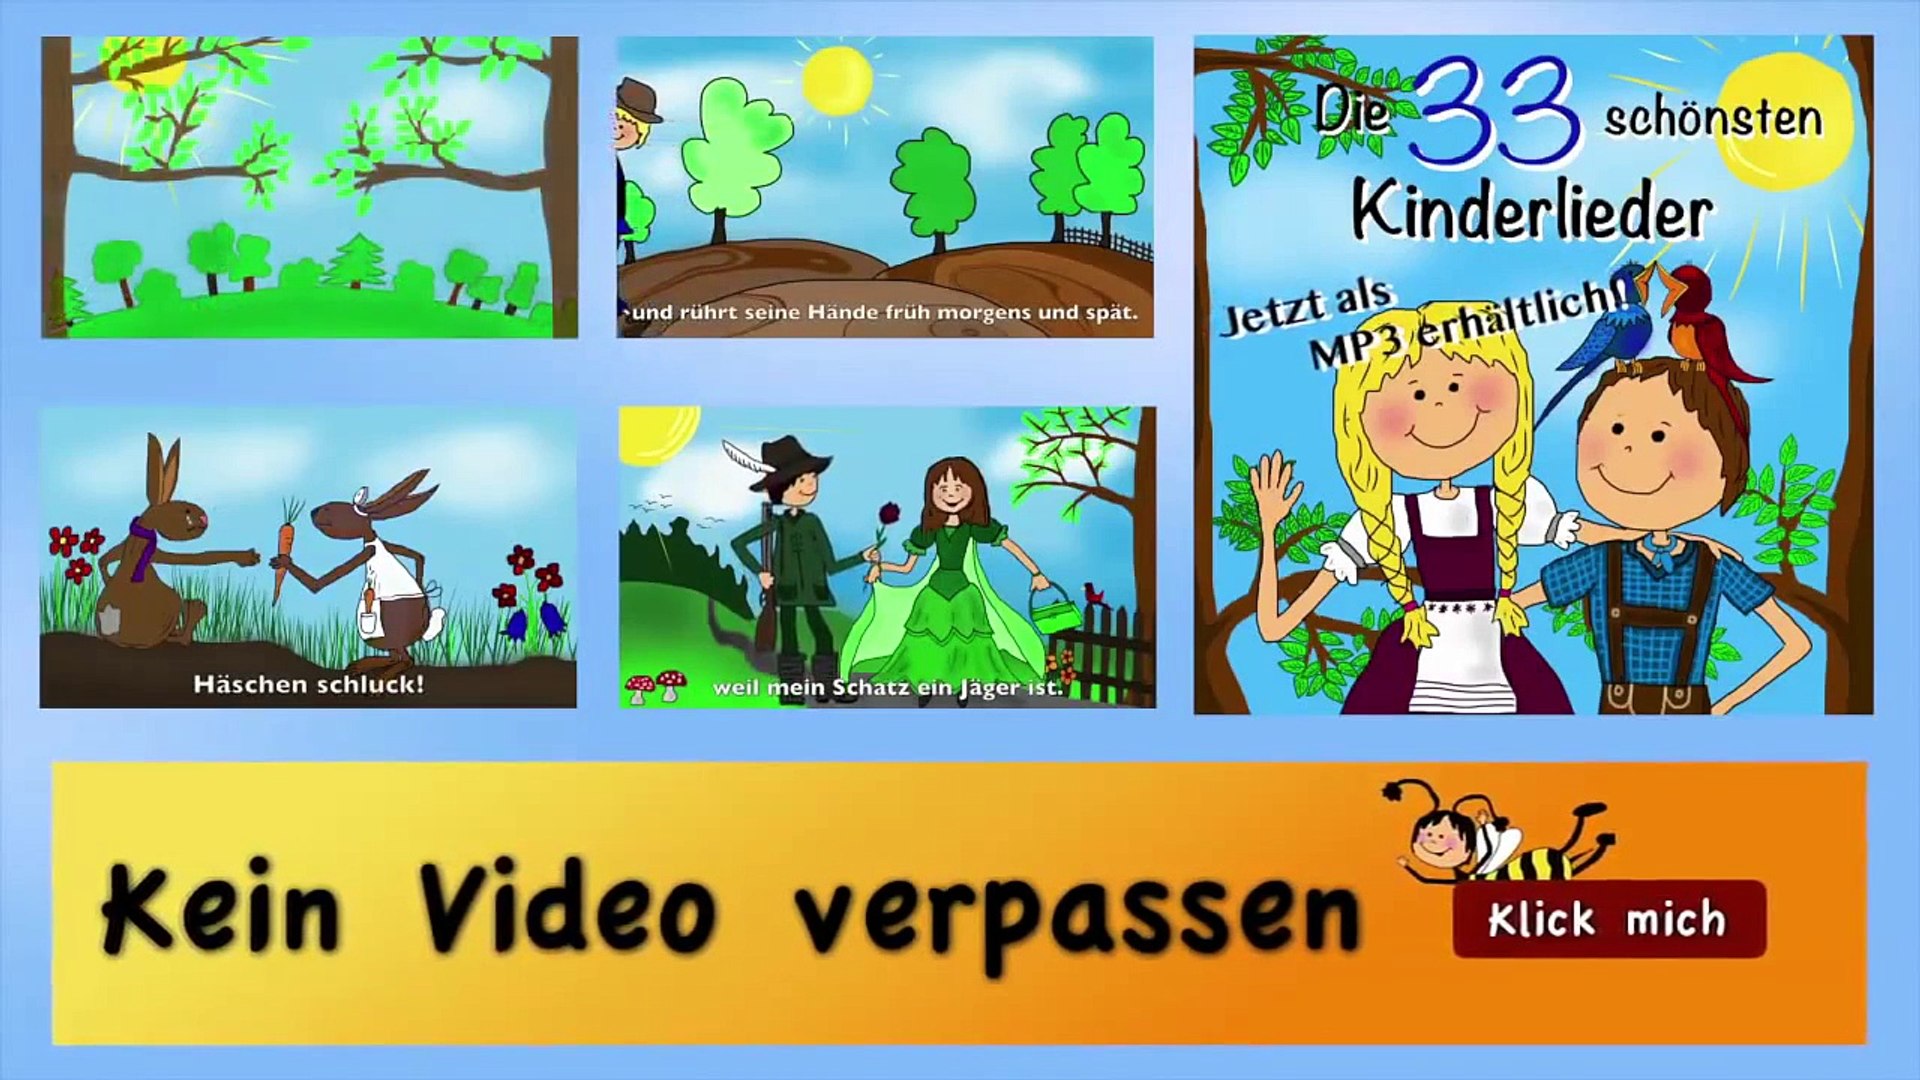 Kinderlieder deutsch Frühlingslieder Video Mix Kinderlieder zum Mitsingen -  Dailymotion Video